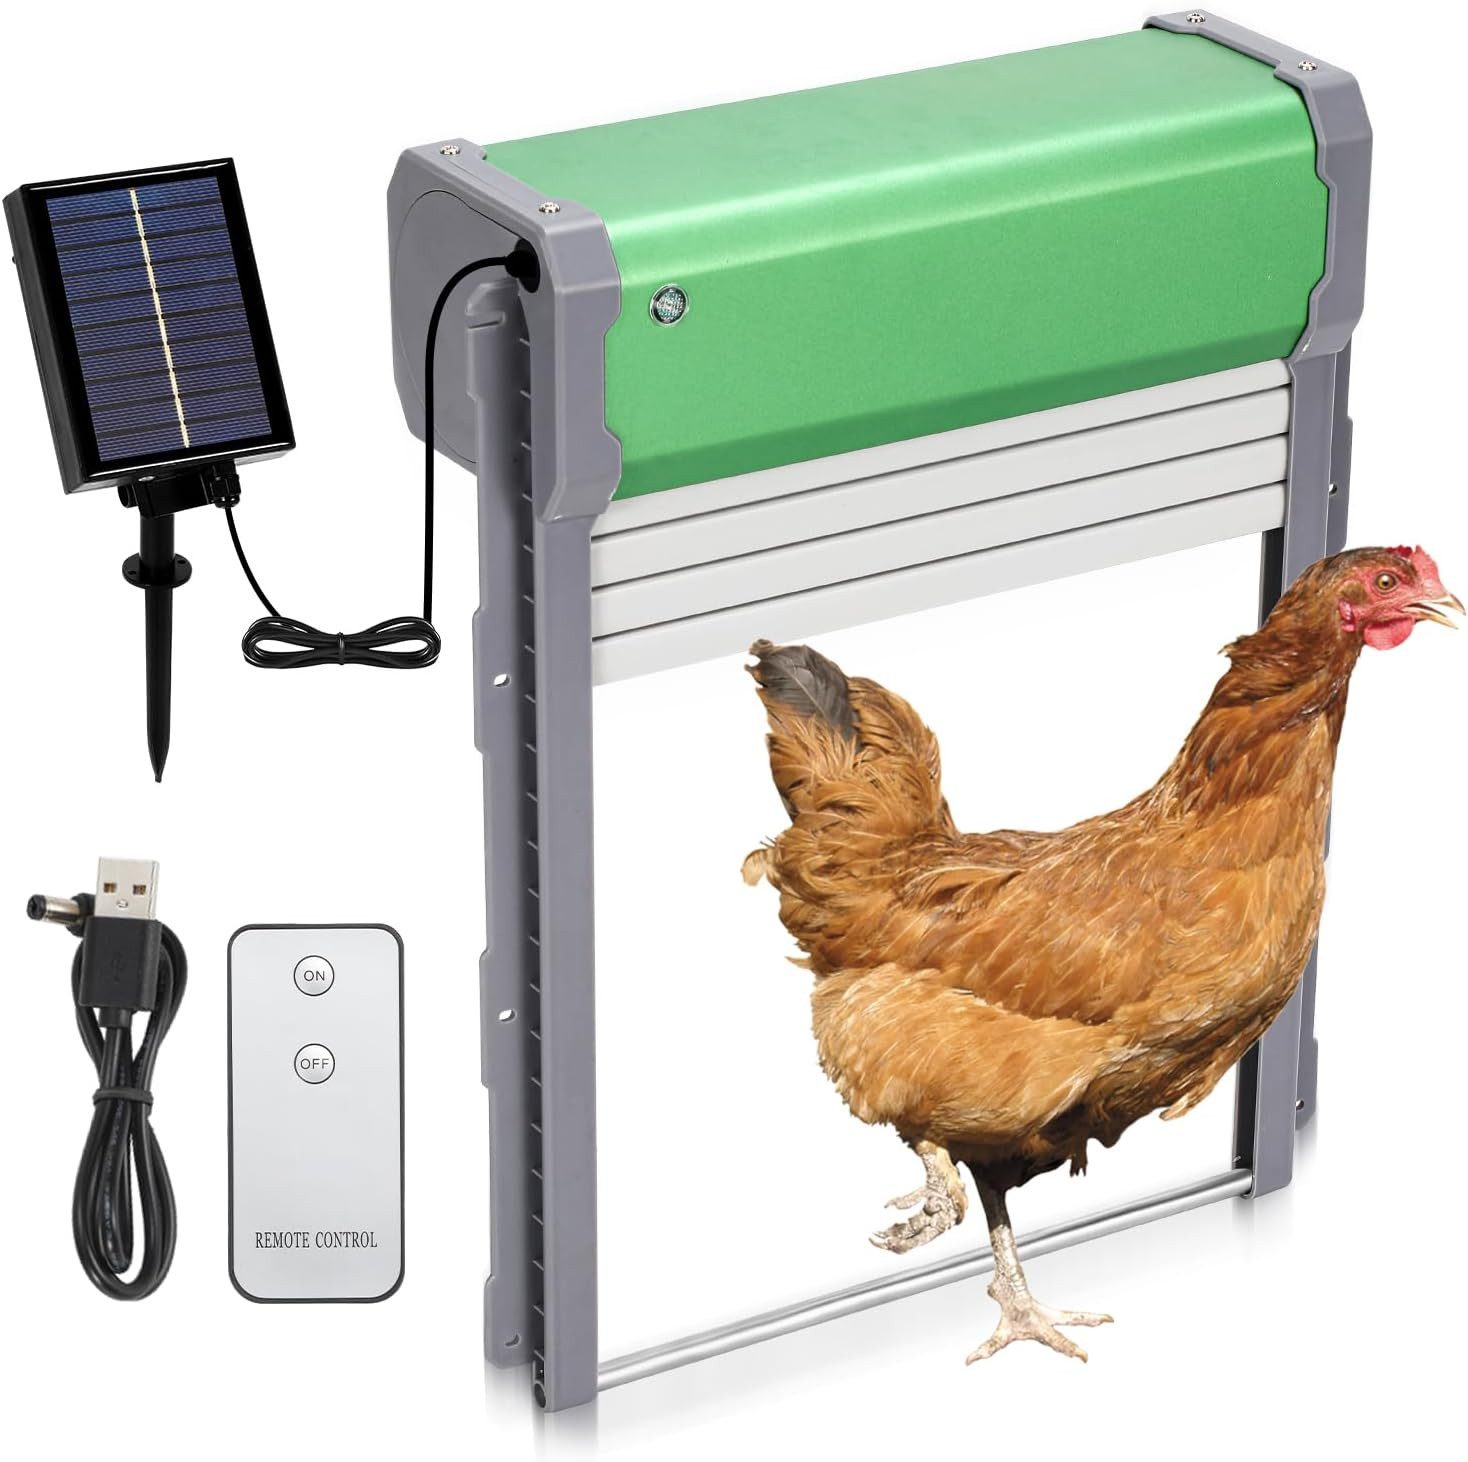 JOEAIS Hühnerstall Hühnerklappe Automatische Elektrische Solar mit Timer Lichtsensor, Automatischer Türöffner Hühnerstall Aluminum Anti-Pinch Hühnertür